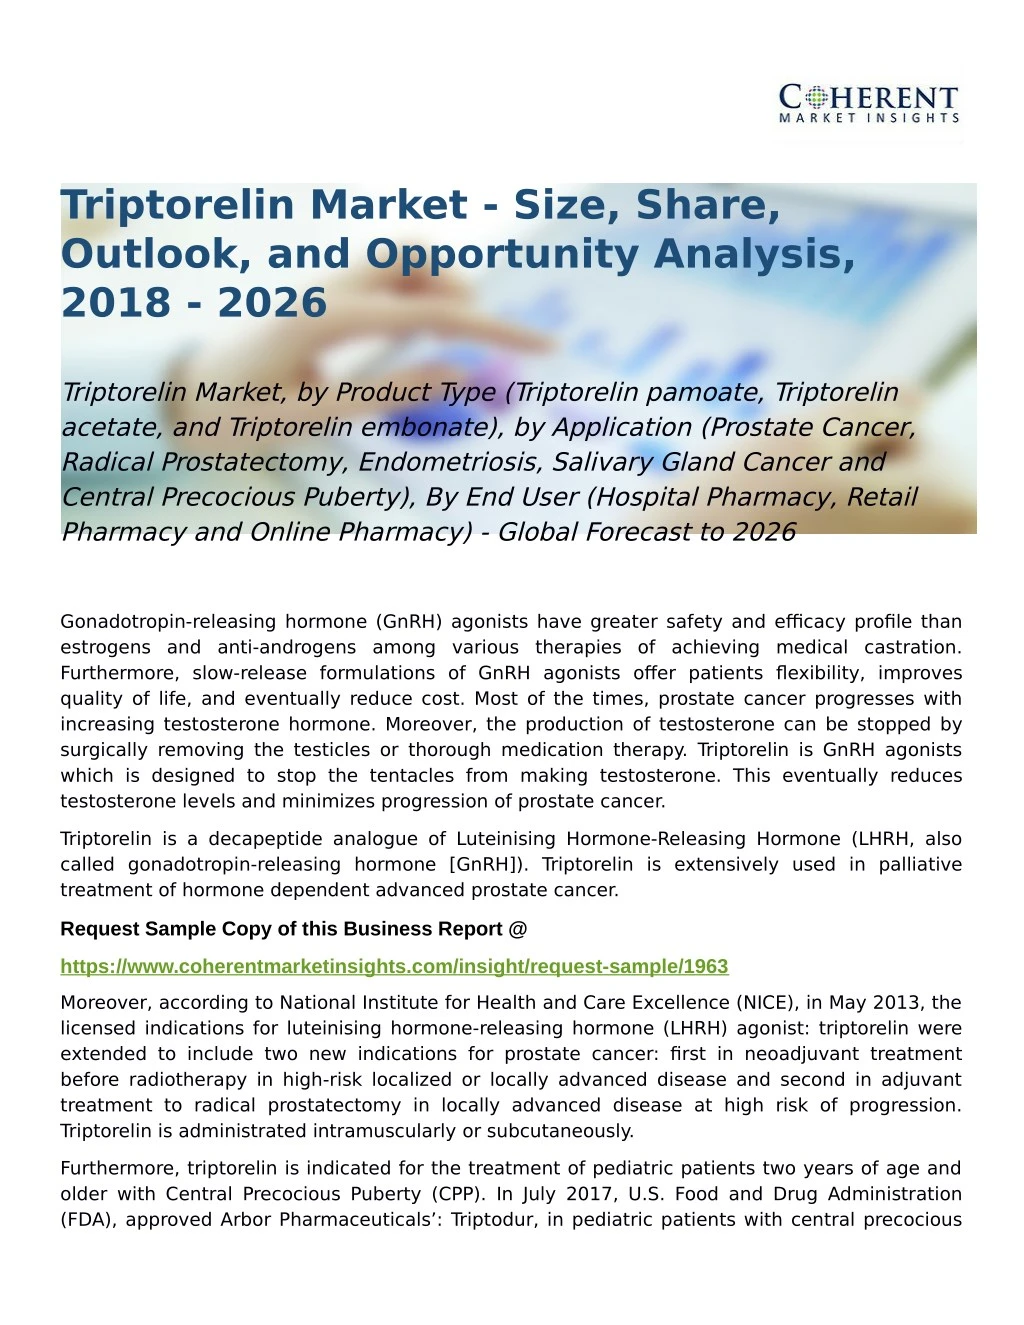 triptorelin market size share outlook